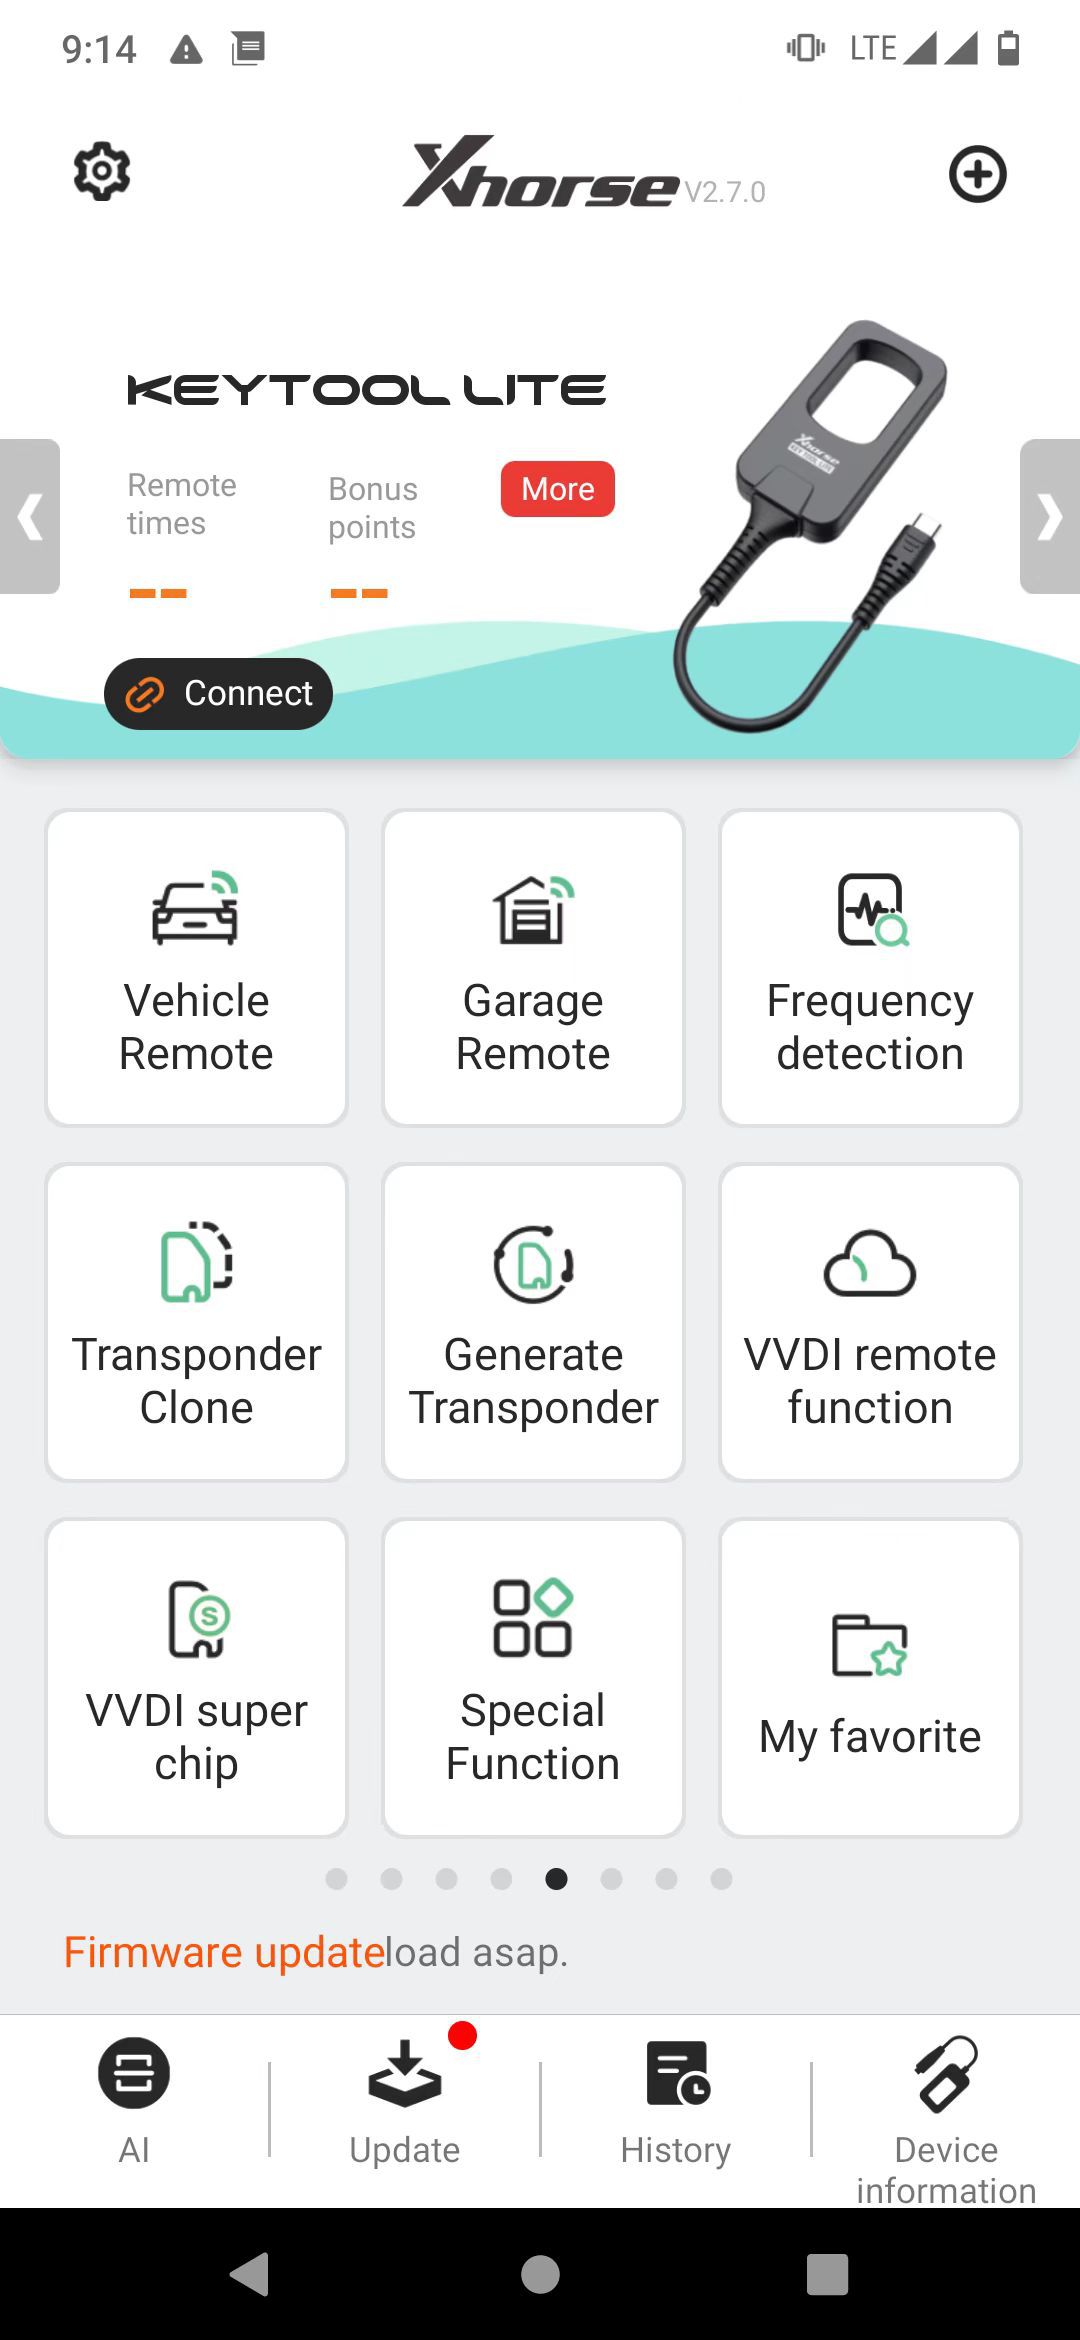 La aplicación de lite, una herramienta clave de xhorse vvdi bee, en teléfonos Android